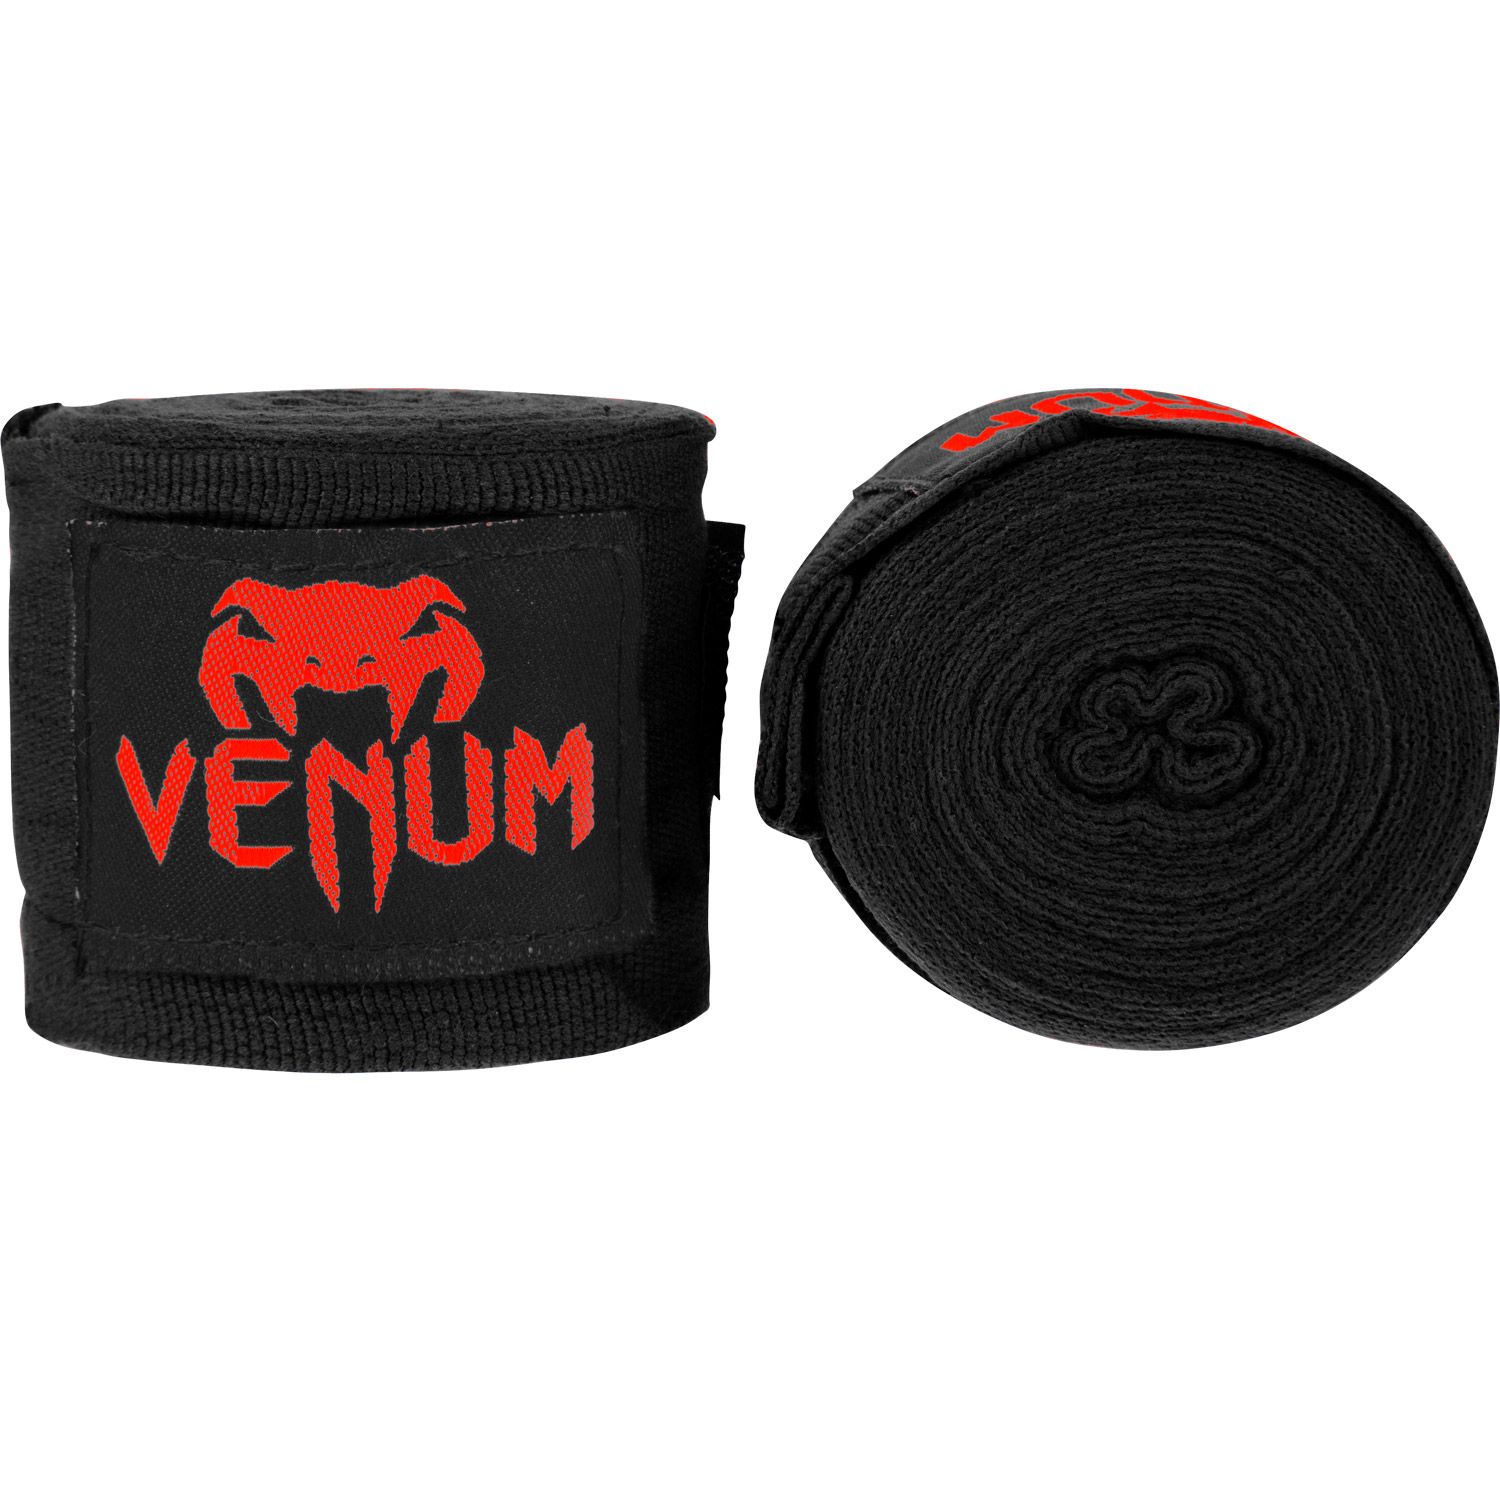 Bandages de boxe Venum Kontact - Noir/Rouge - 4 mètres